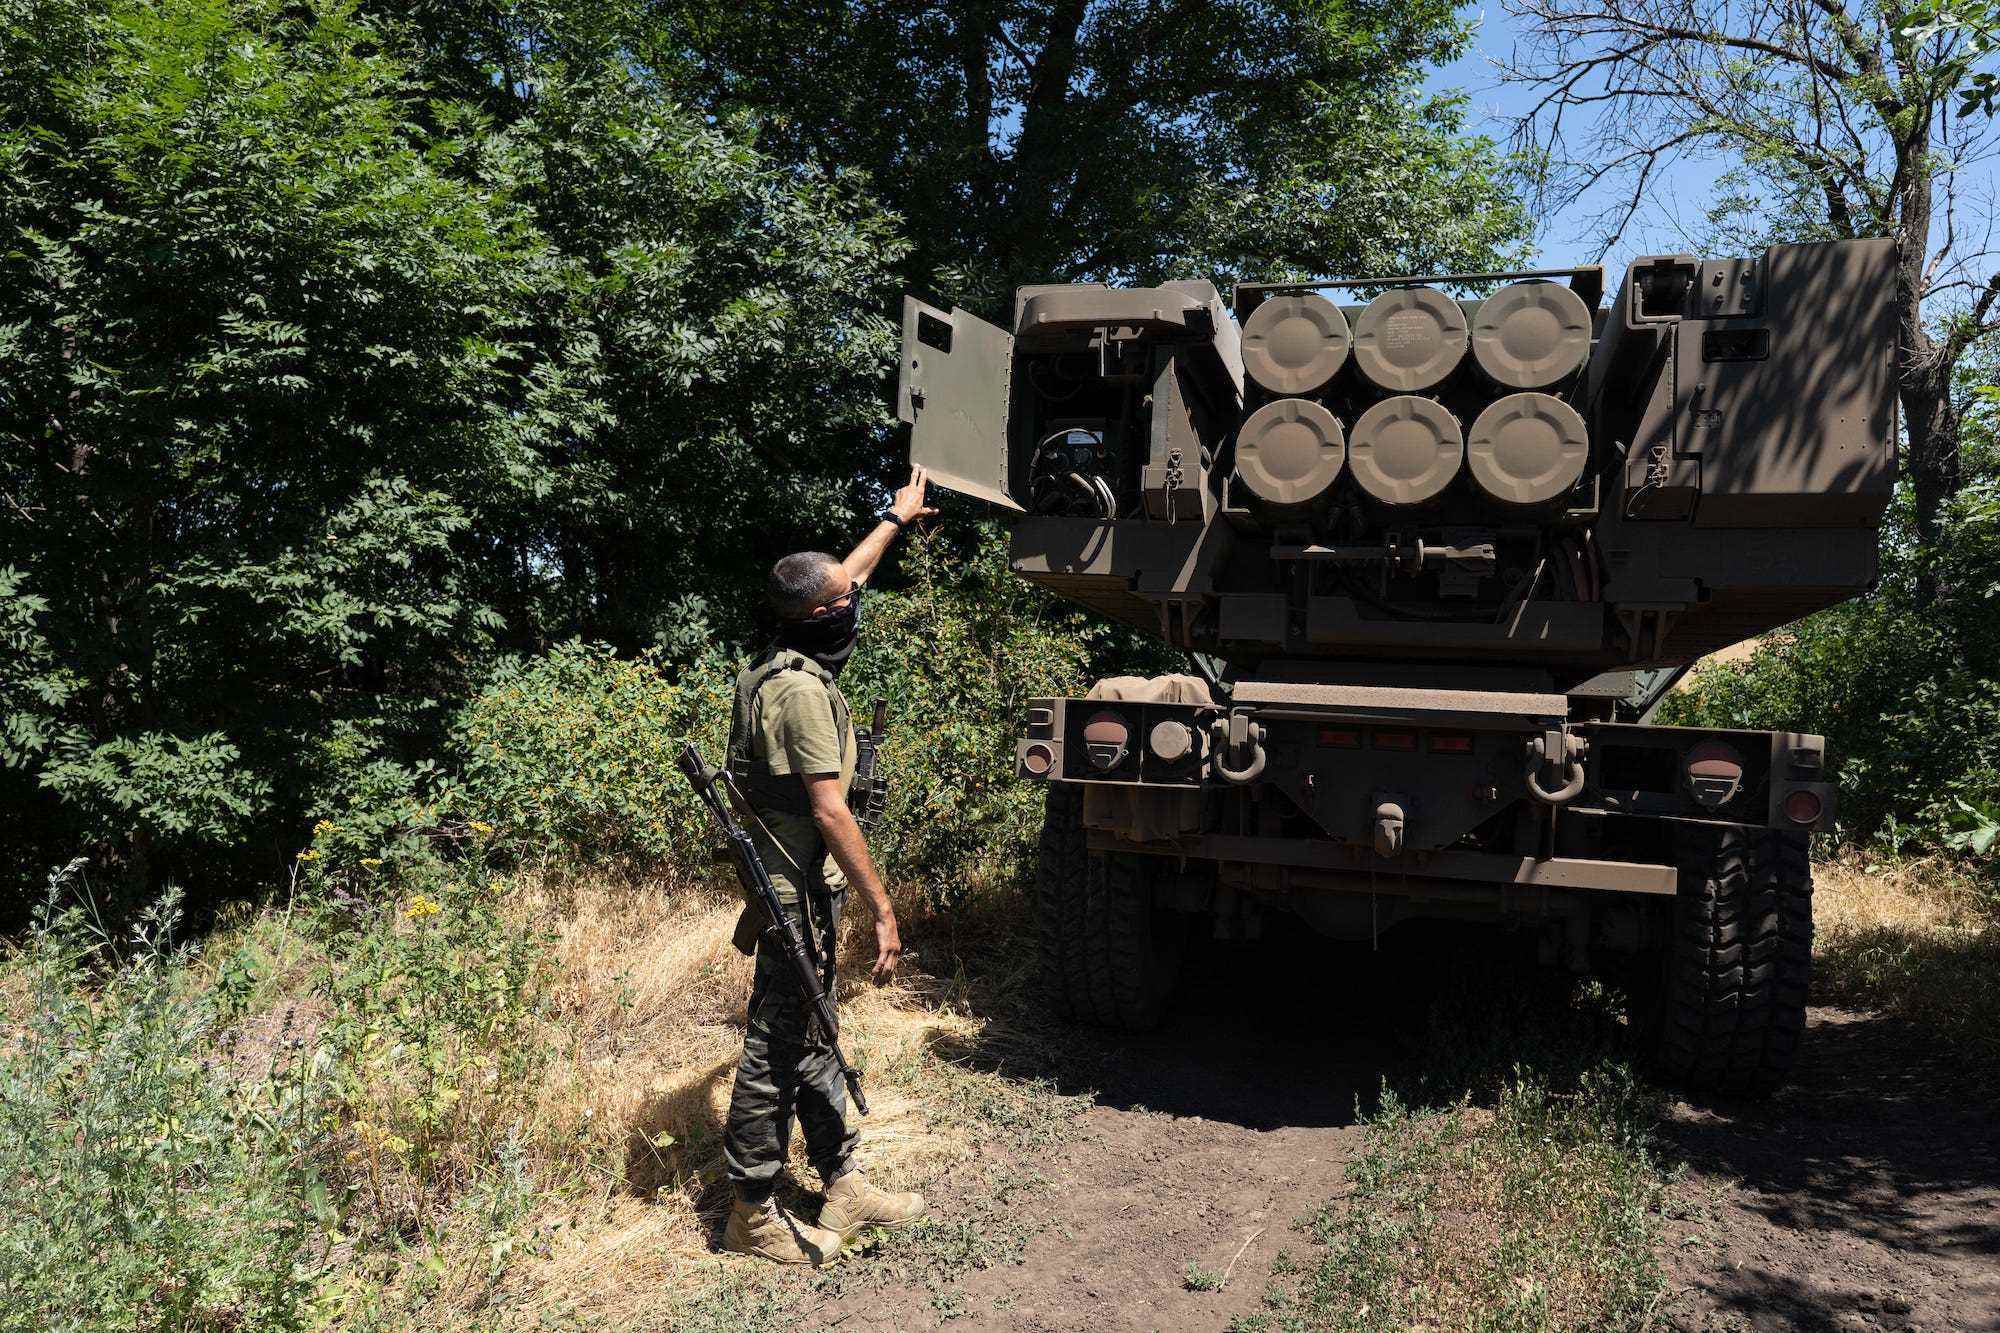 Ein ukrainischer Soldat zeigt die Raketen auf einem HIMARS-Fahrzeug zwischen einigen Bäumen